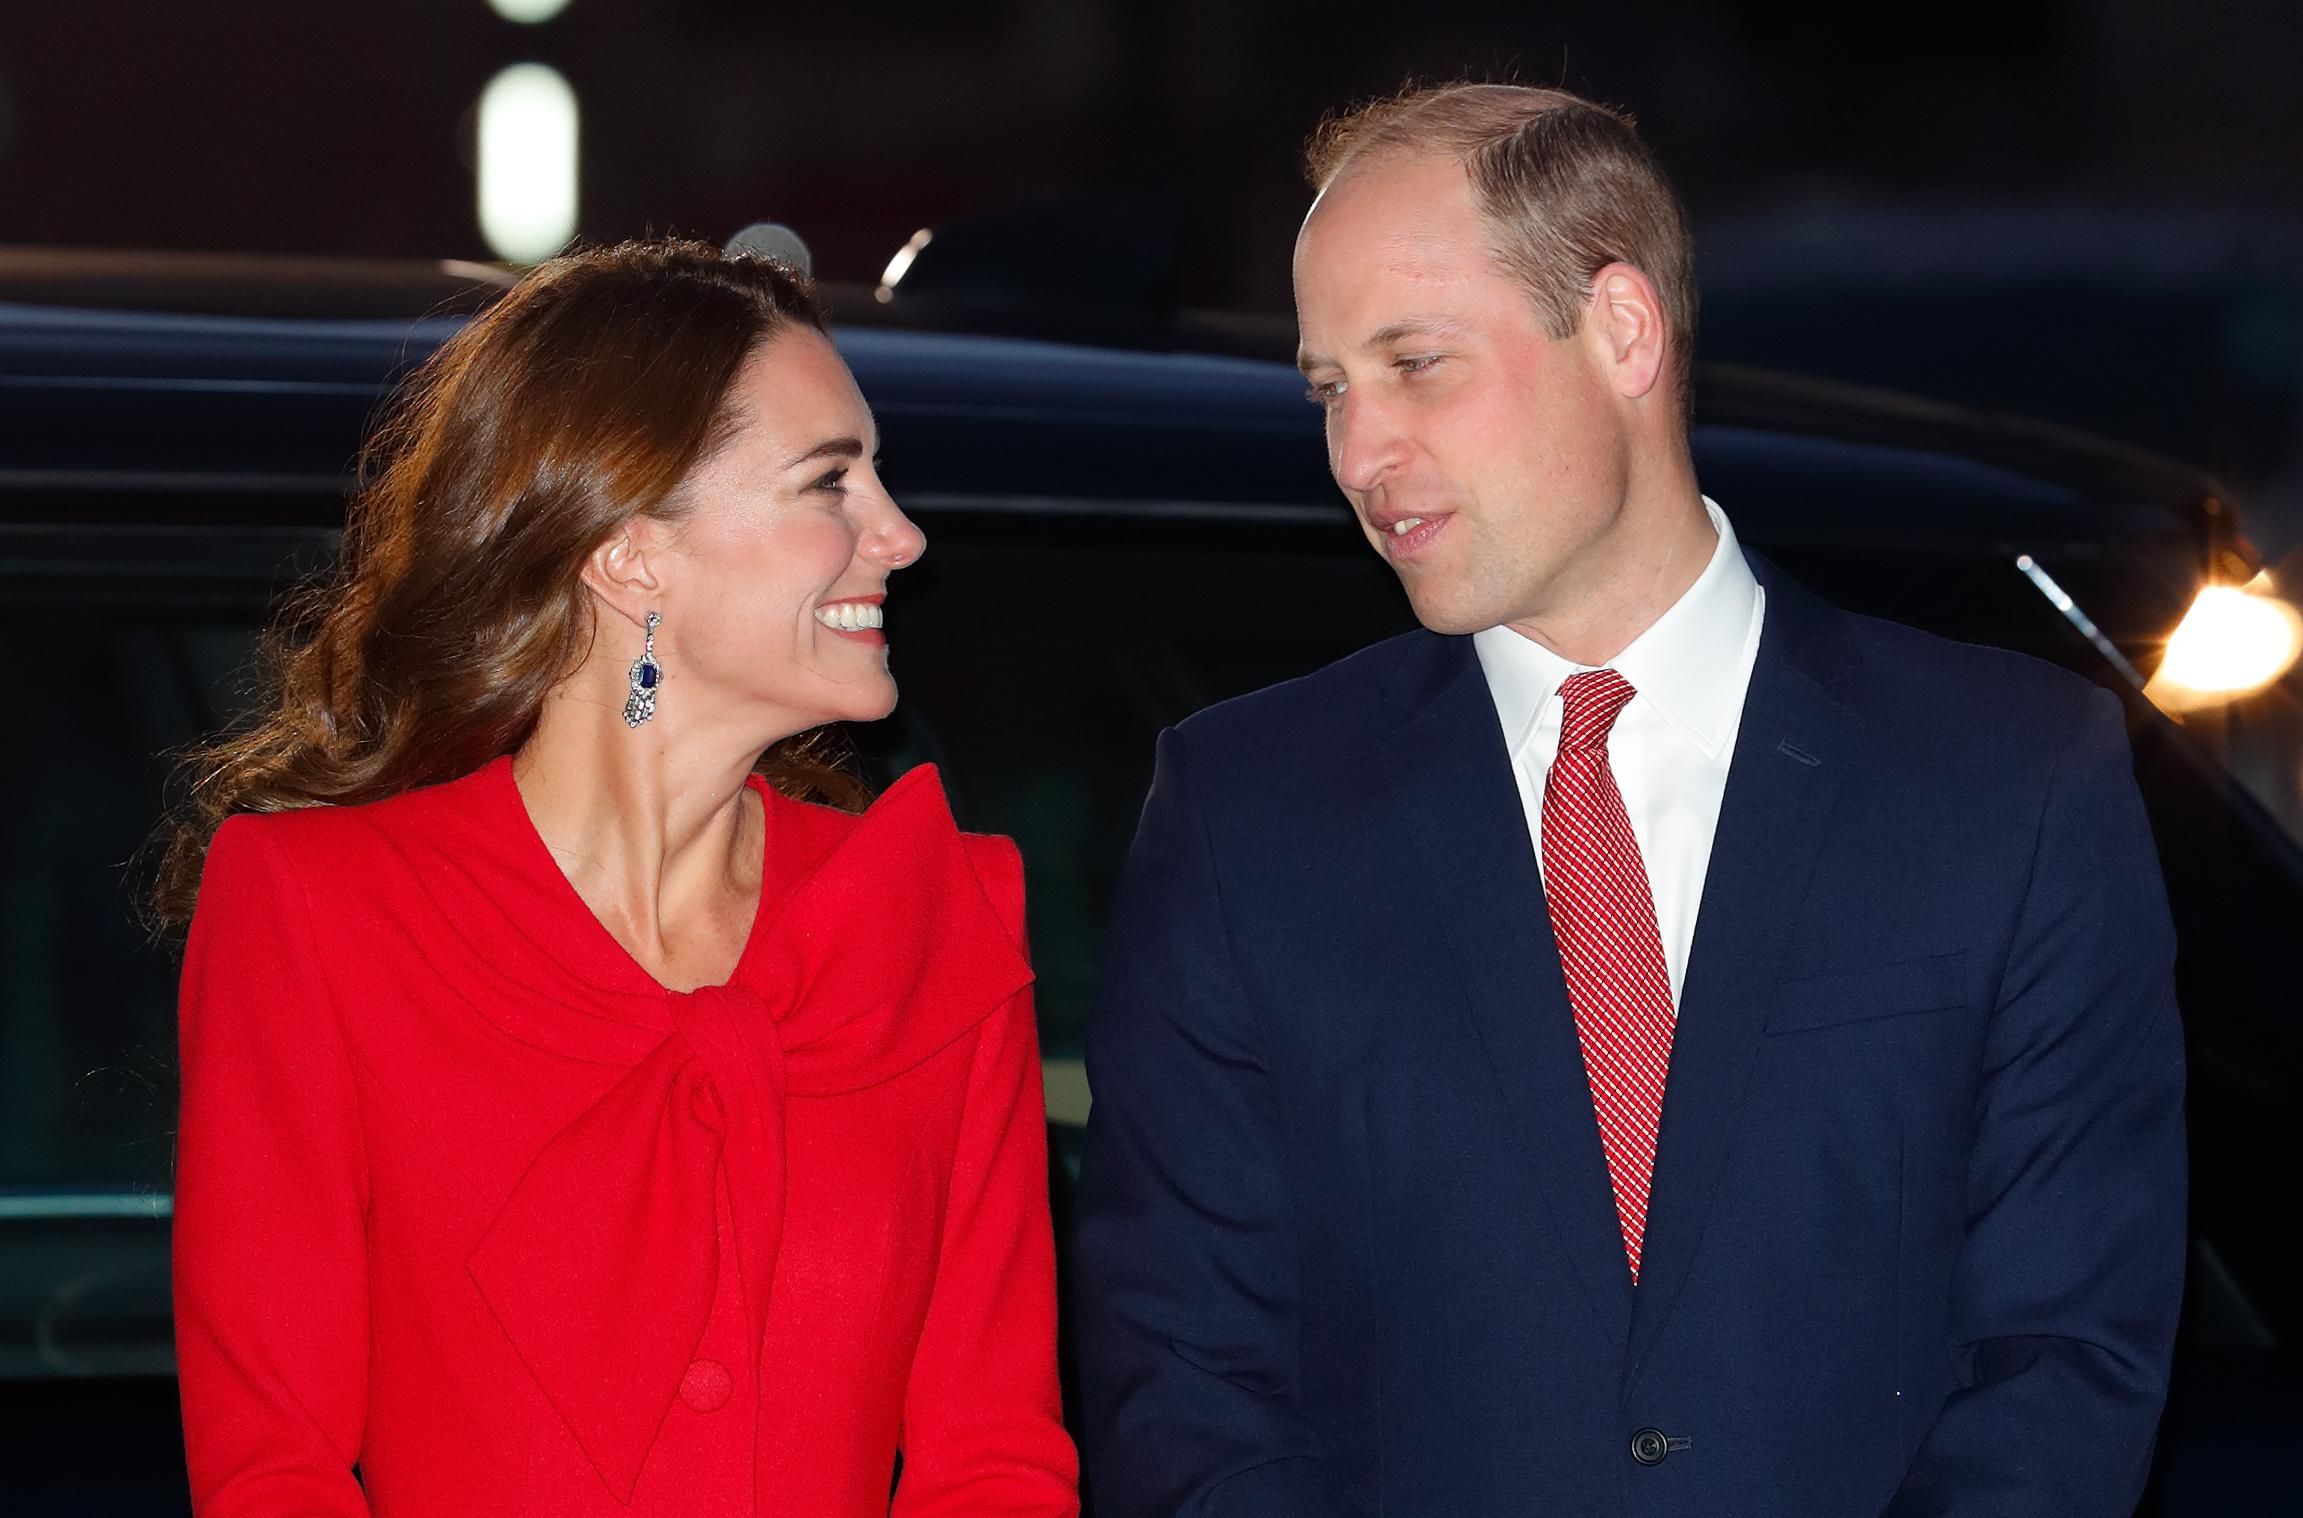 Видео дня: почему вся сеть тронута влюбленным взглядом Кейт и принца Уильяма на концерте